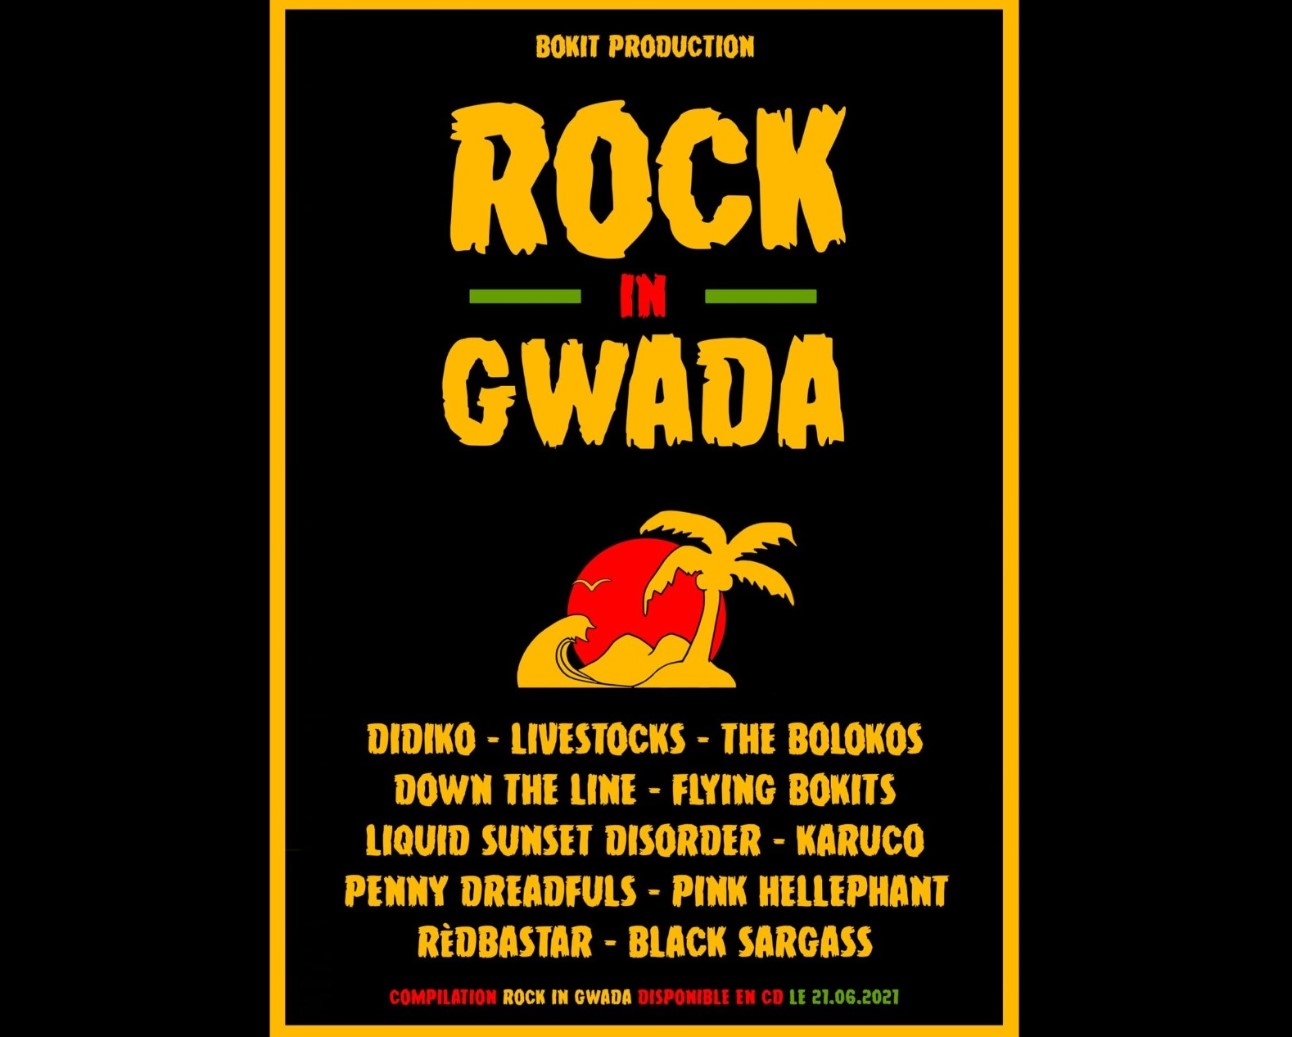     Une compile "Rock in Gwada" qui mêle les styles  

